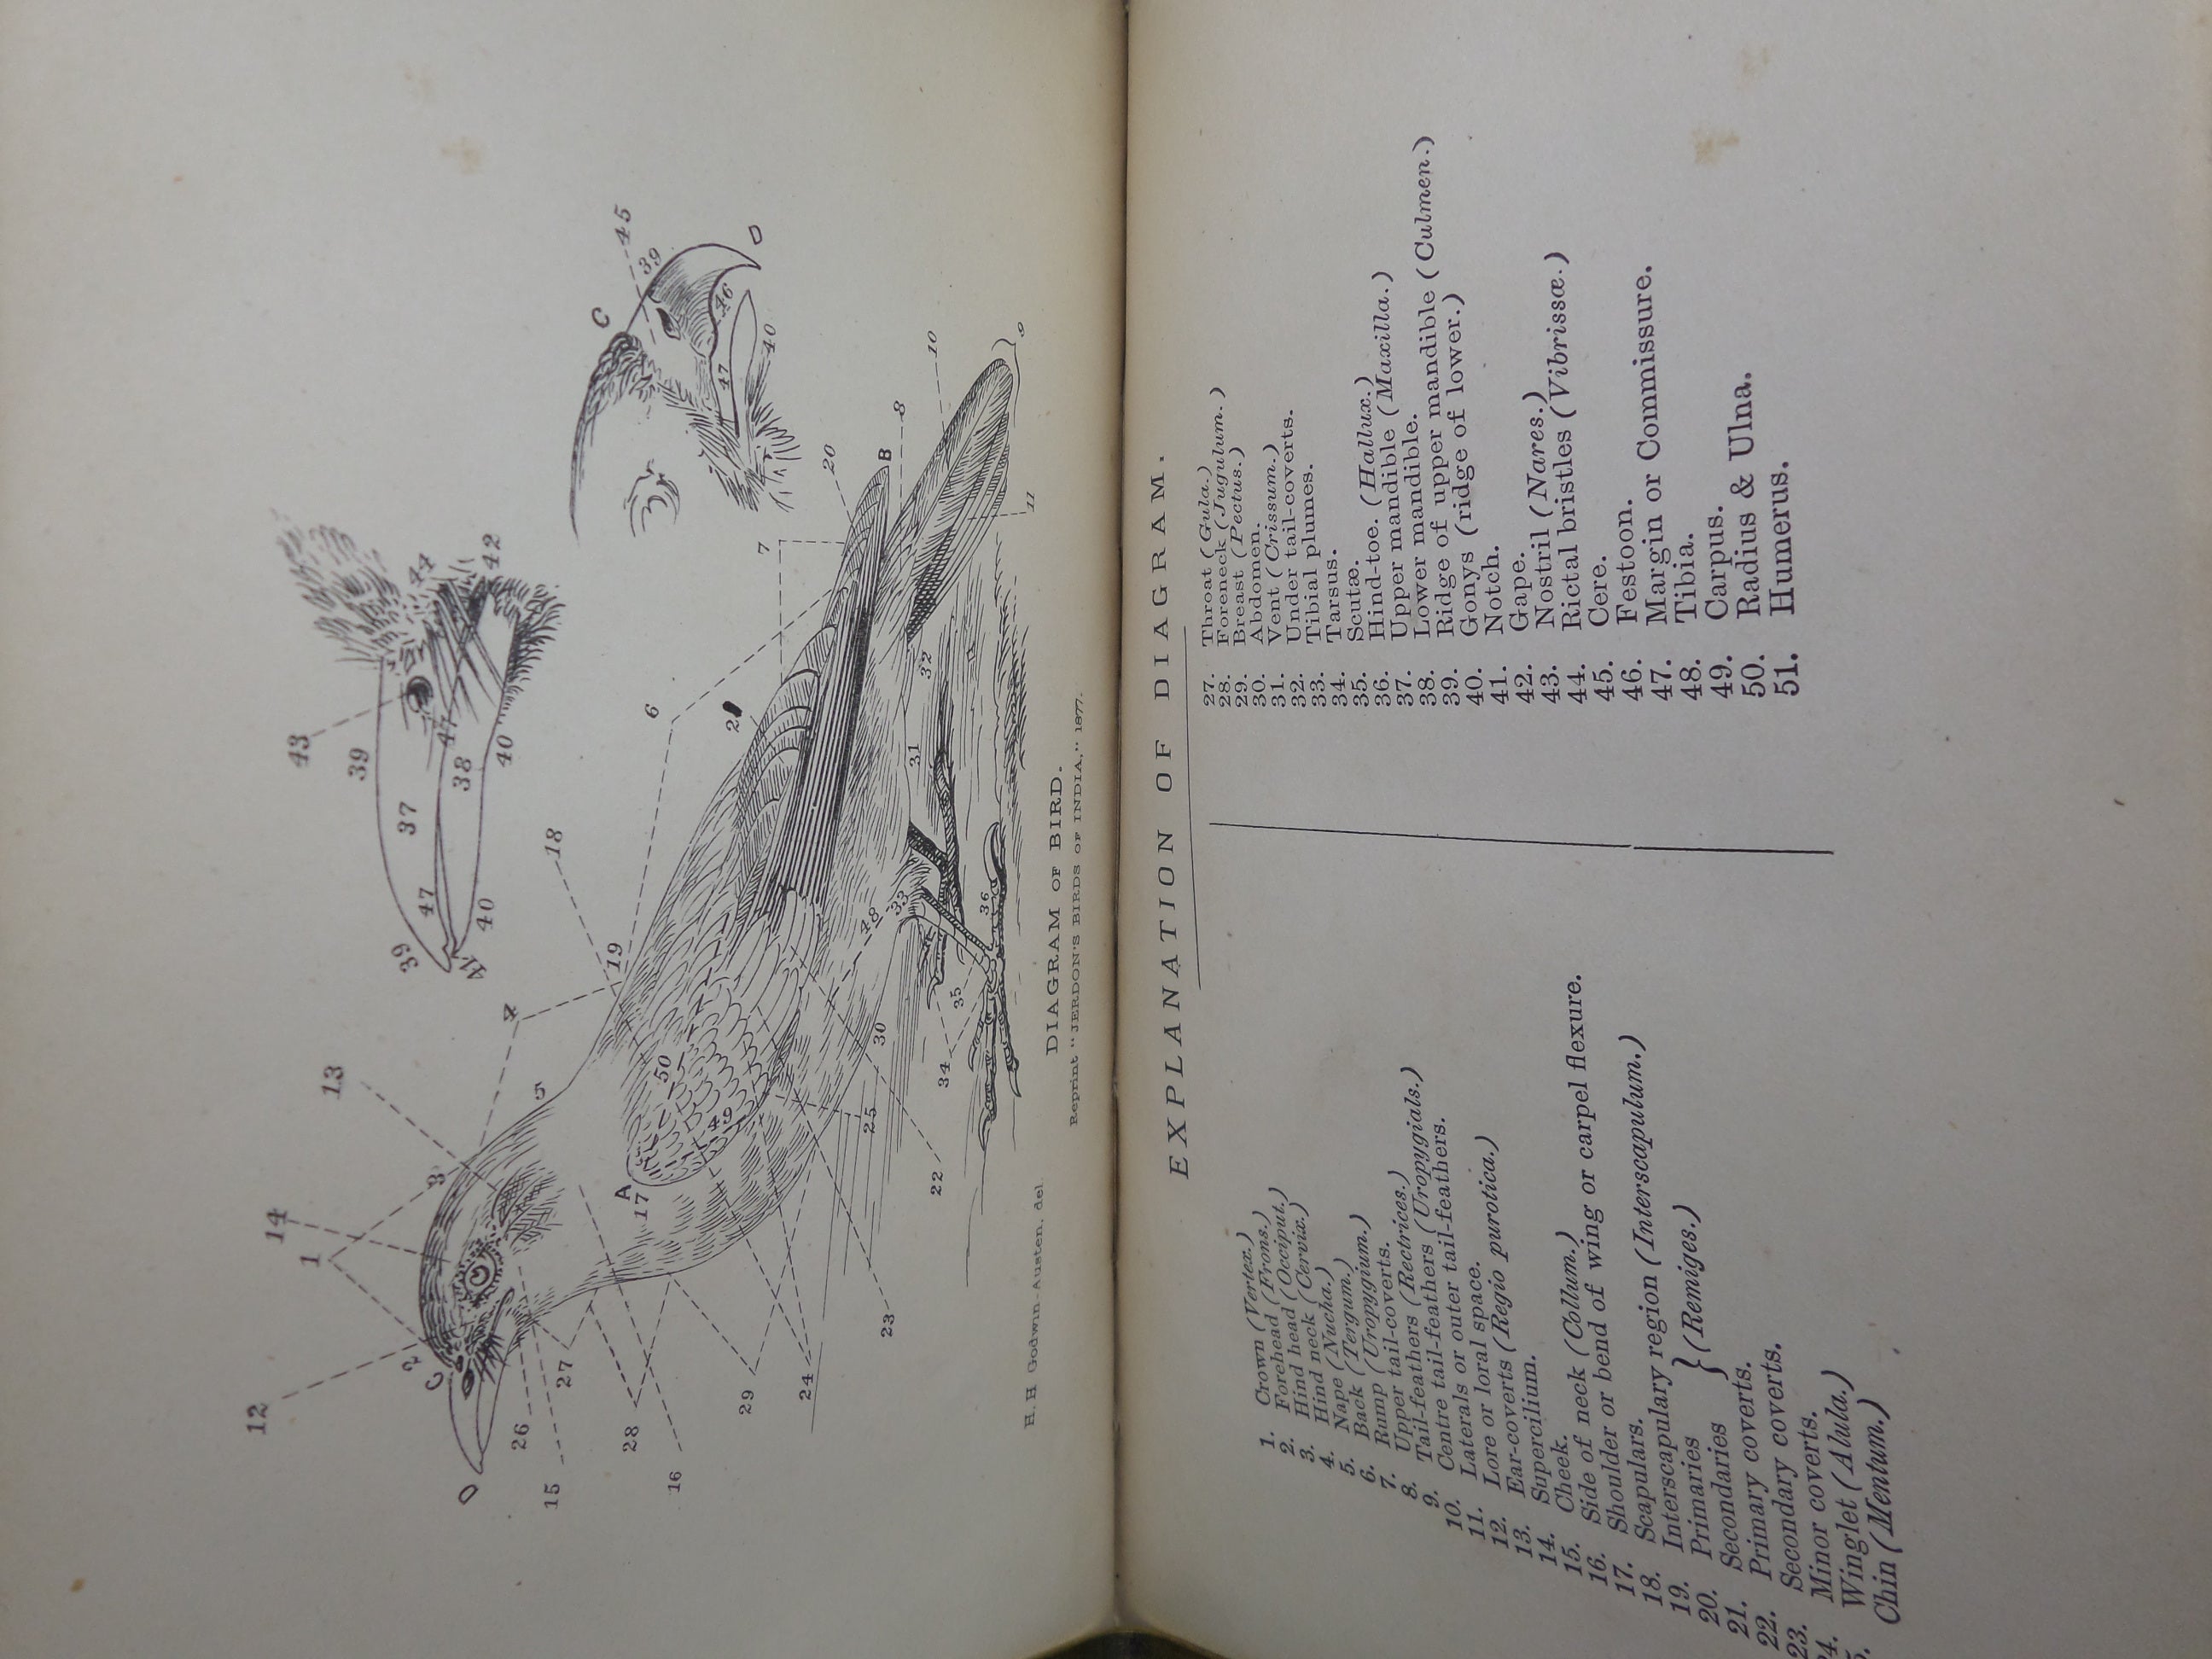 THE BIRDS OF INDIA - MANUAL OF ORNITHOLOGY BY T.C. JERDON 1877 LEATHER-BOUND SET